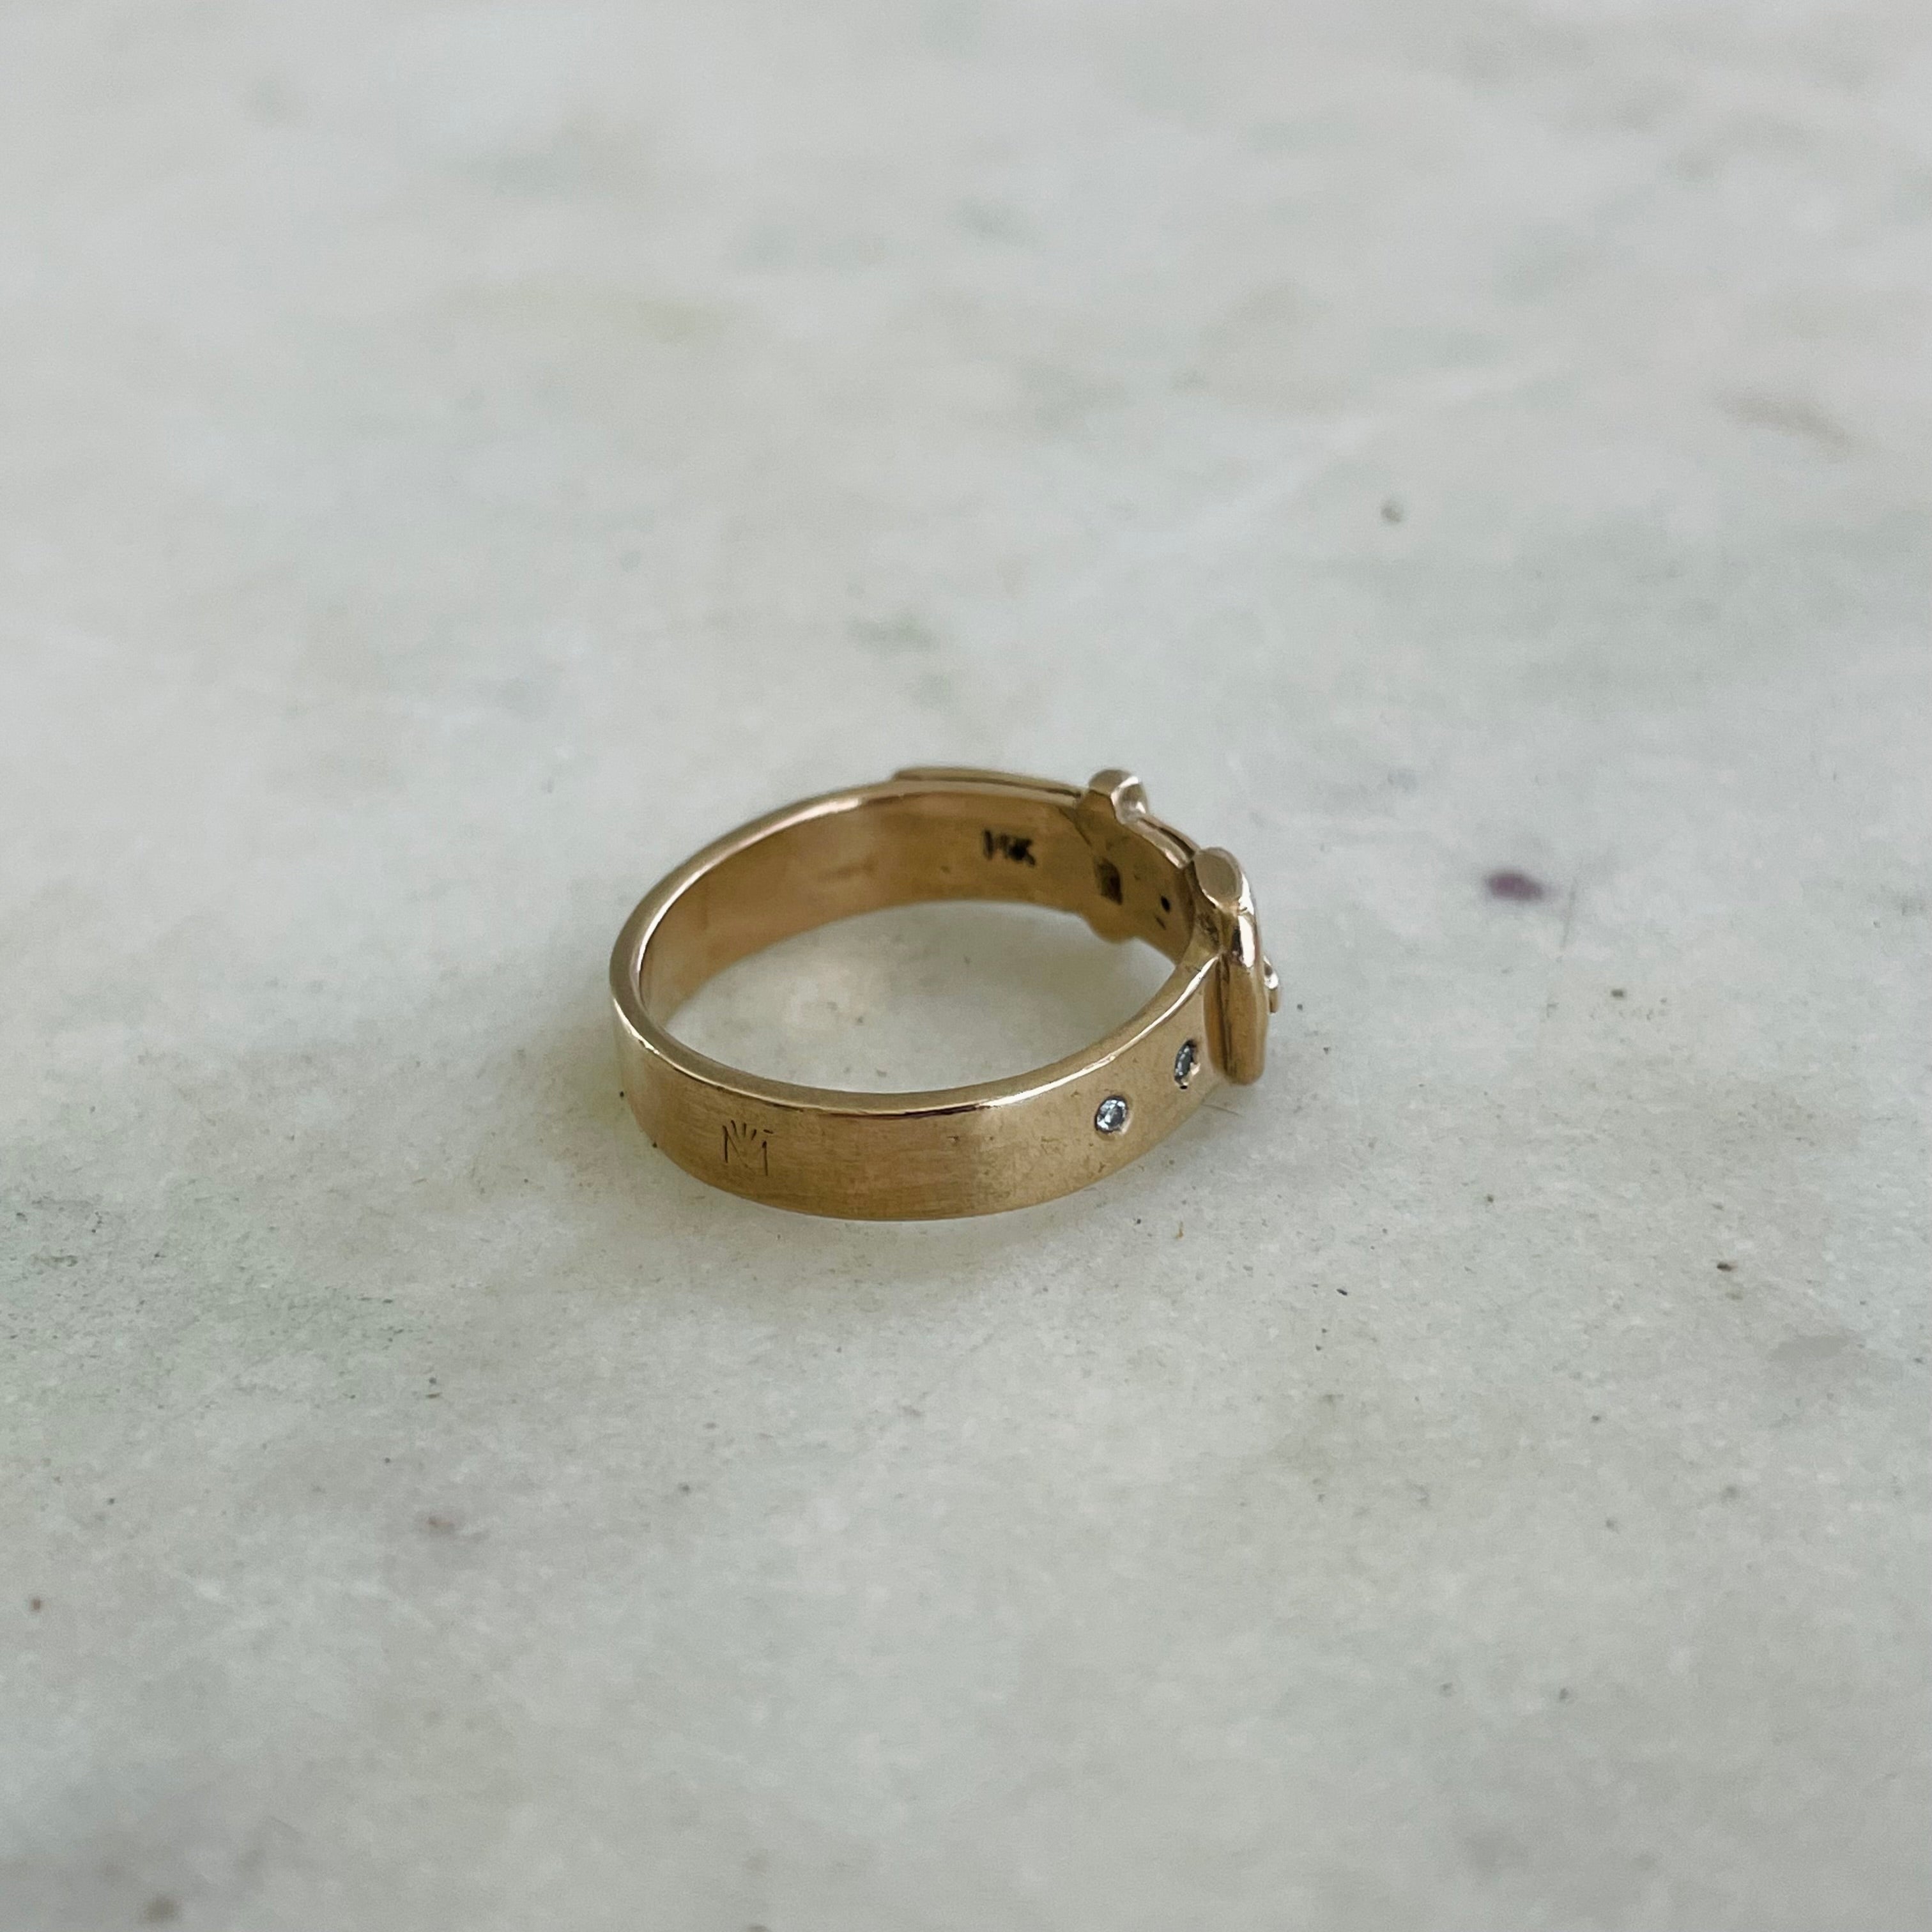 14K Gold Finger Ring Designs Online for Women -?PC Chandra